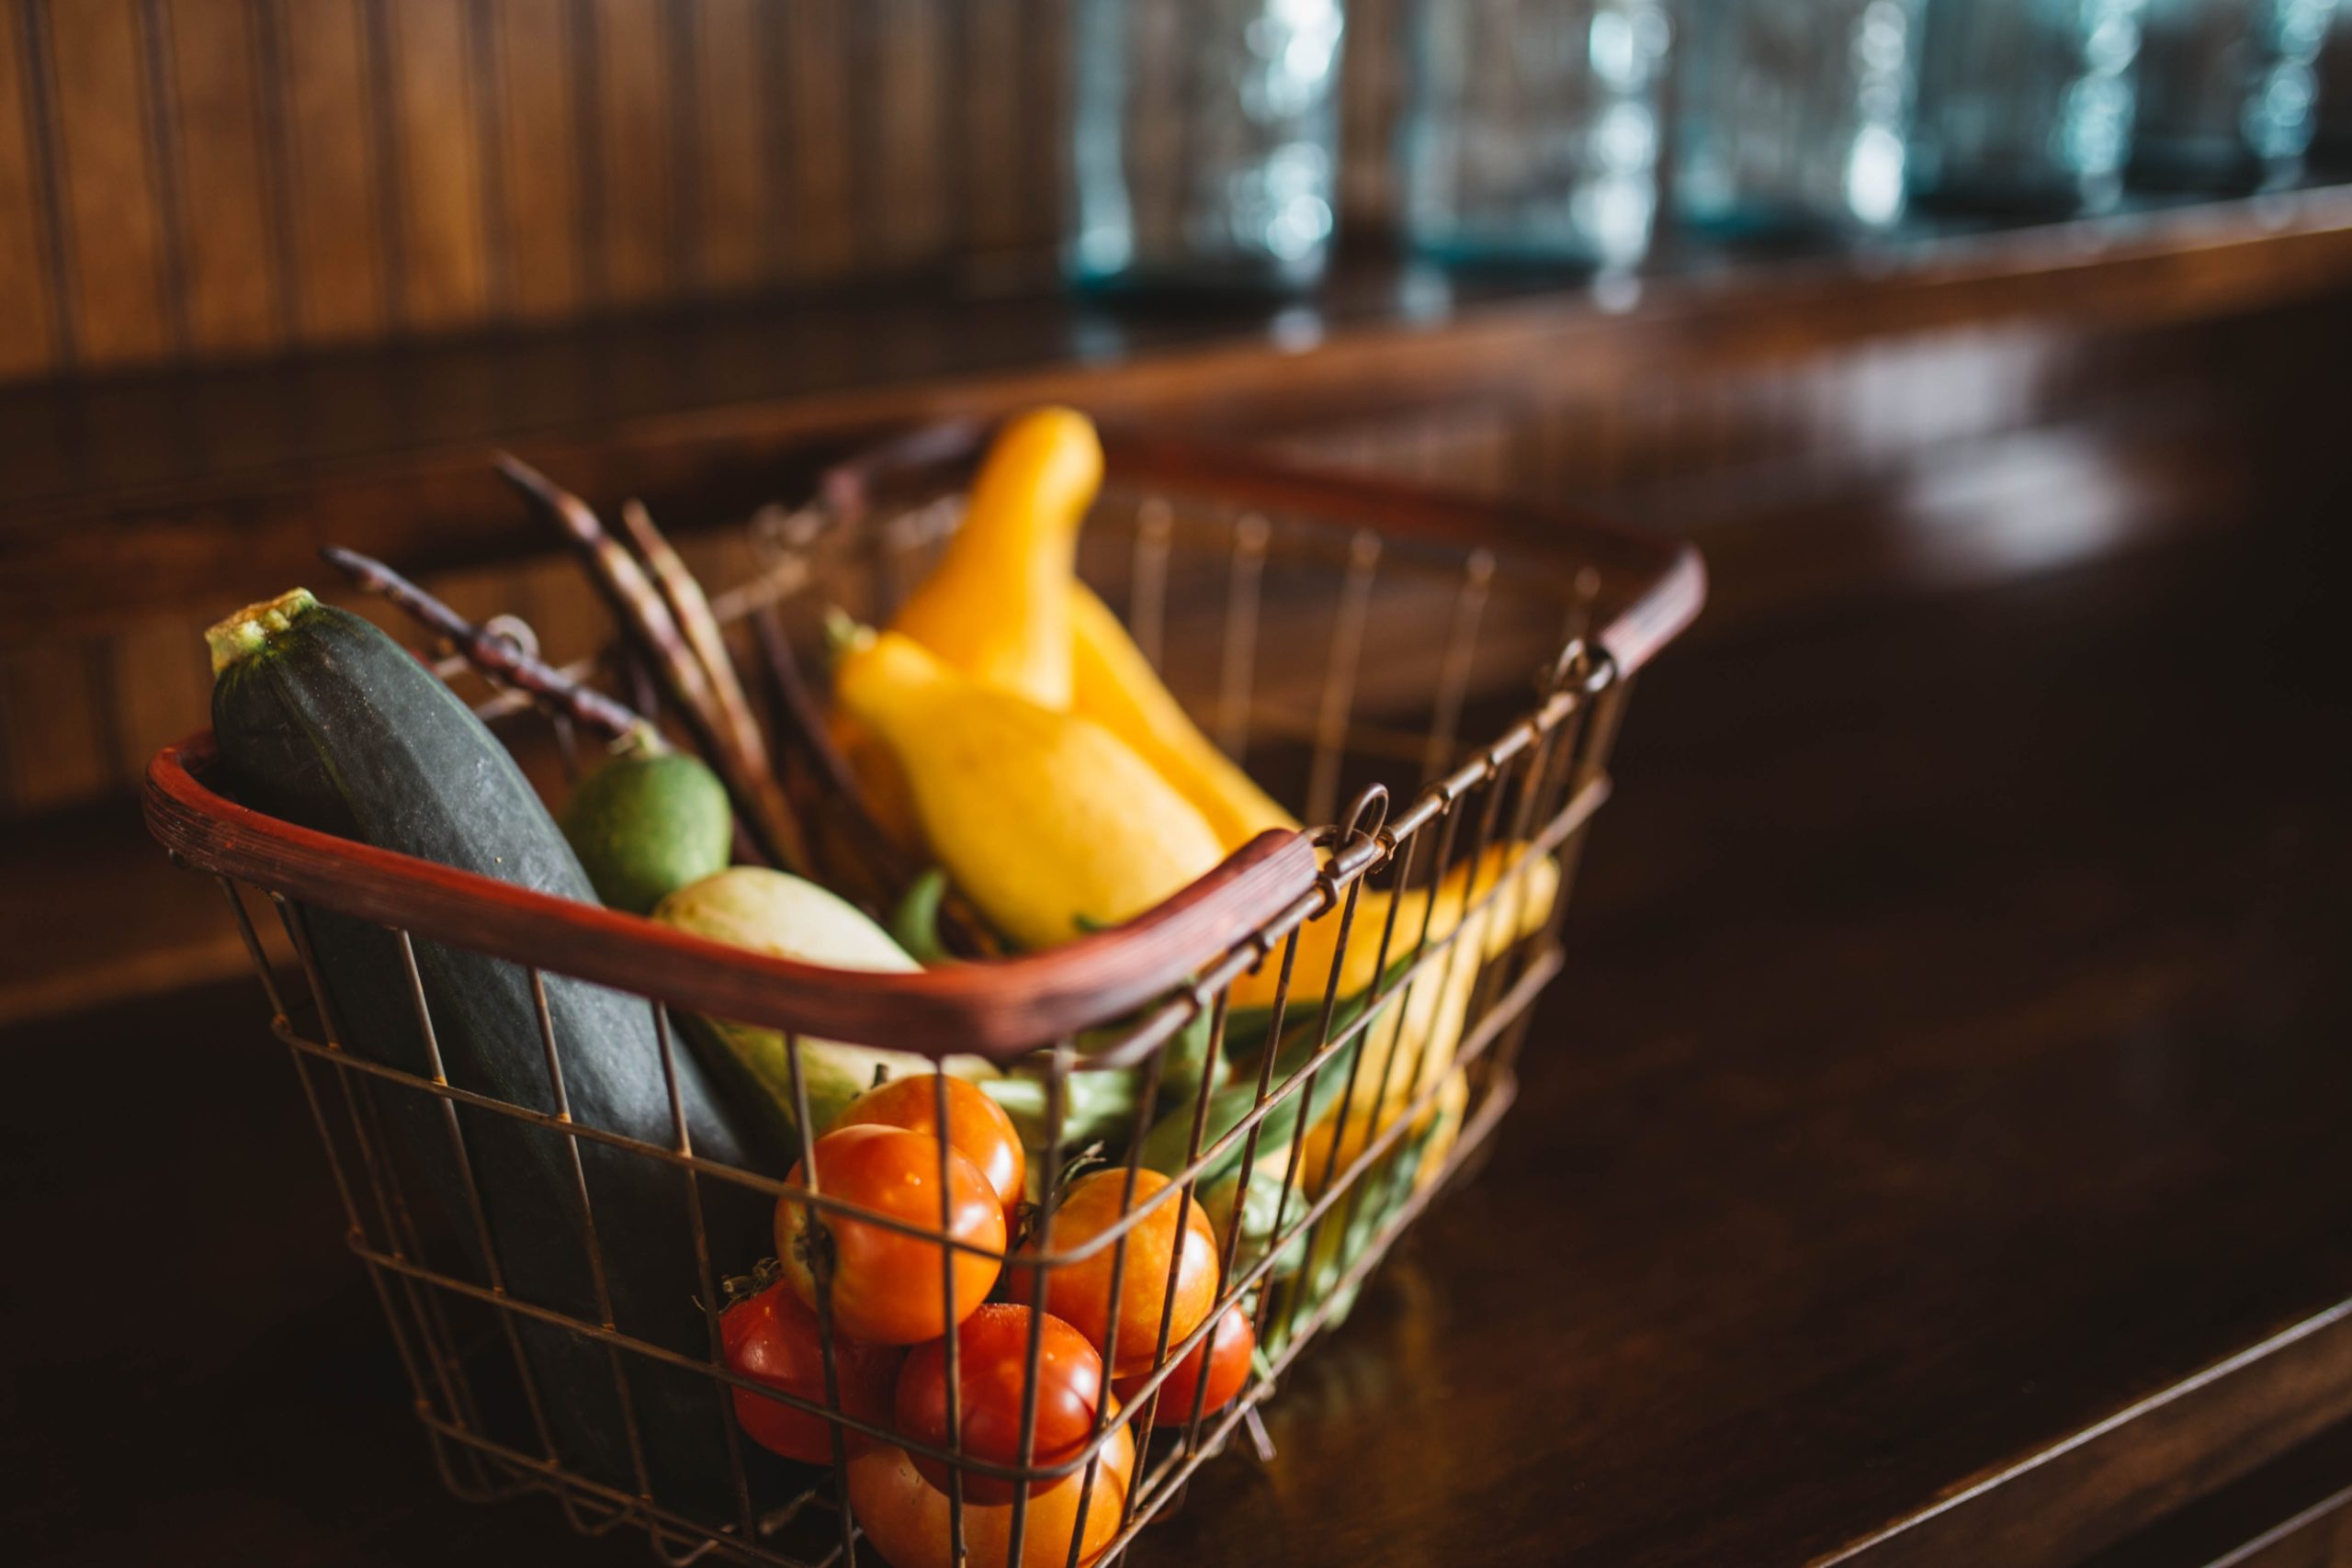 Des fruits et légumes dans un panier sur une table en cuisine.